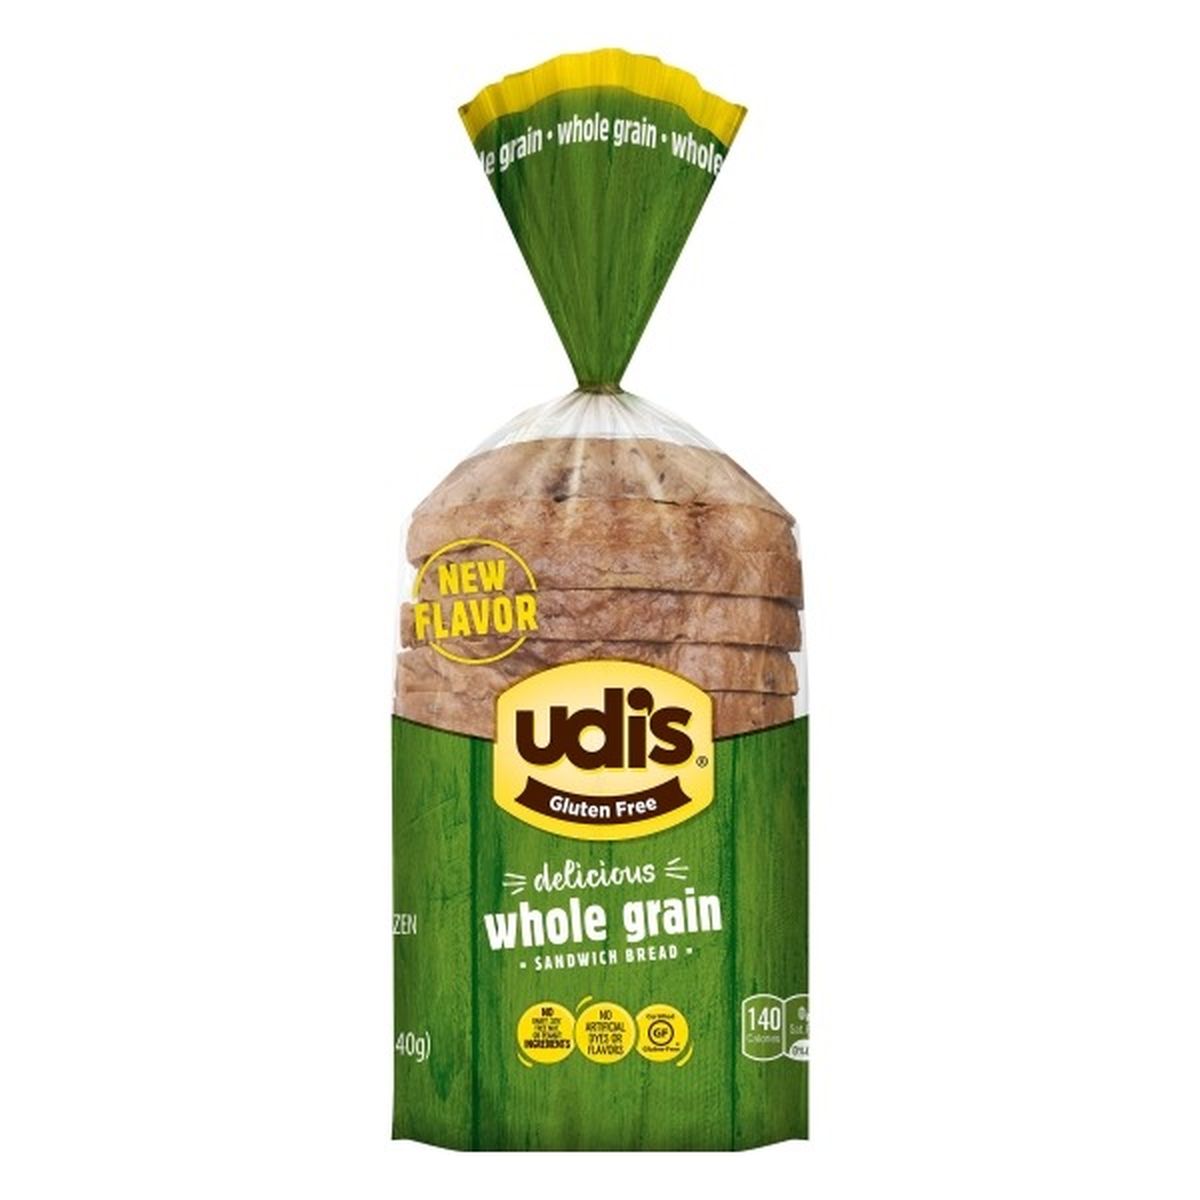 Calories in Udi's Sandwich Bread, Whole Grain